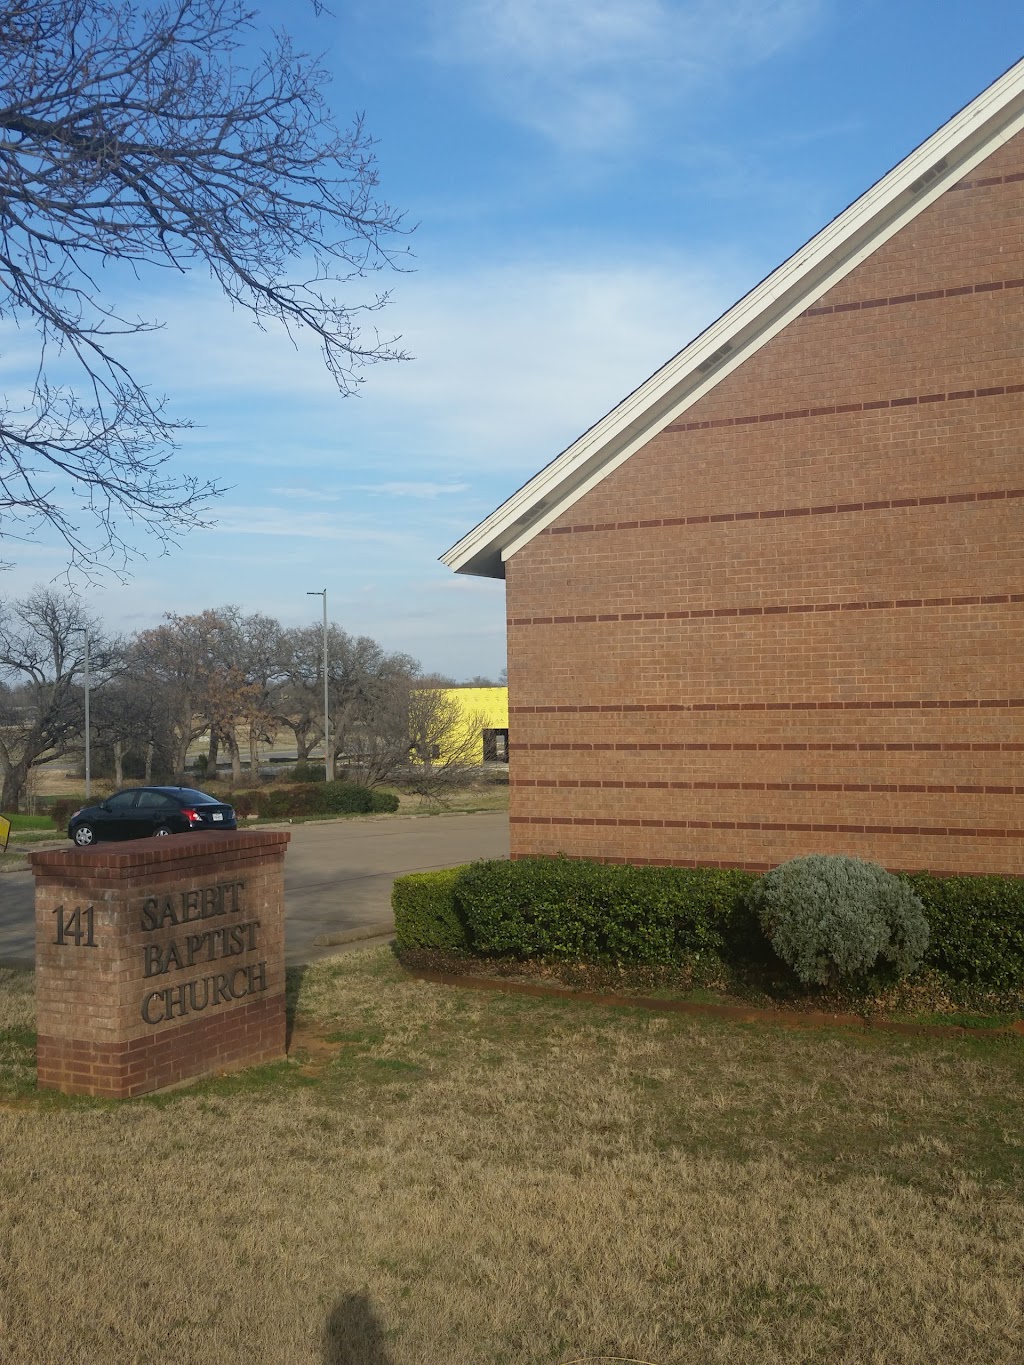 새빛침례교회 Saebit Baptist Church | 141 S Main St, Euless, TX 76040, USA | Phone: (940) 206-4290